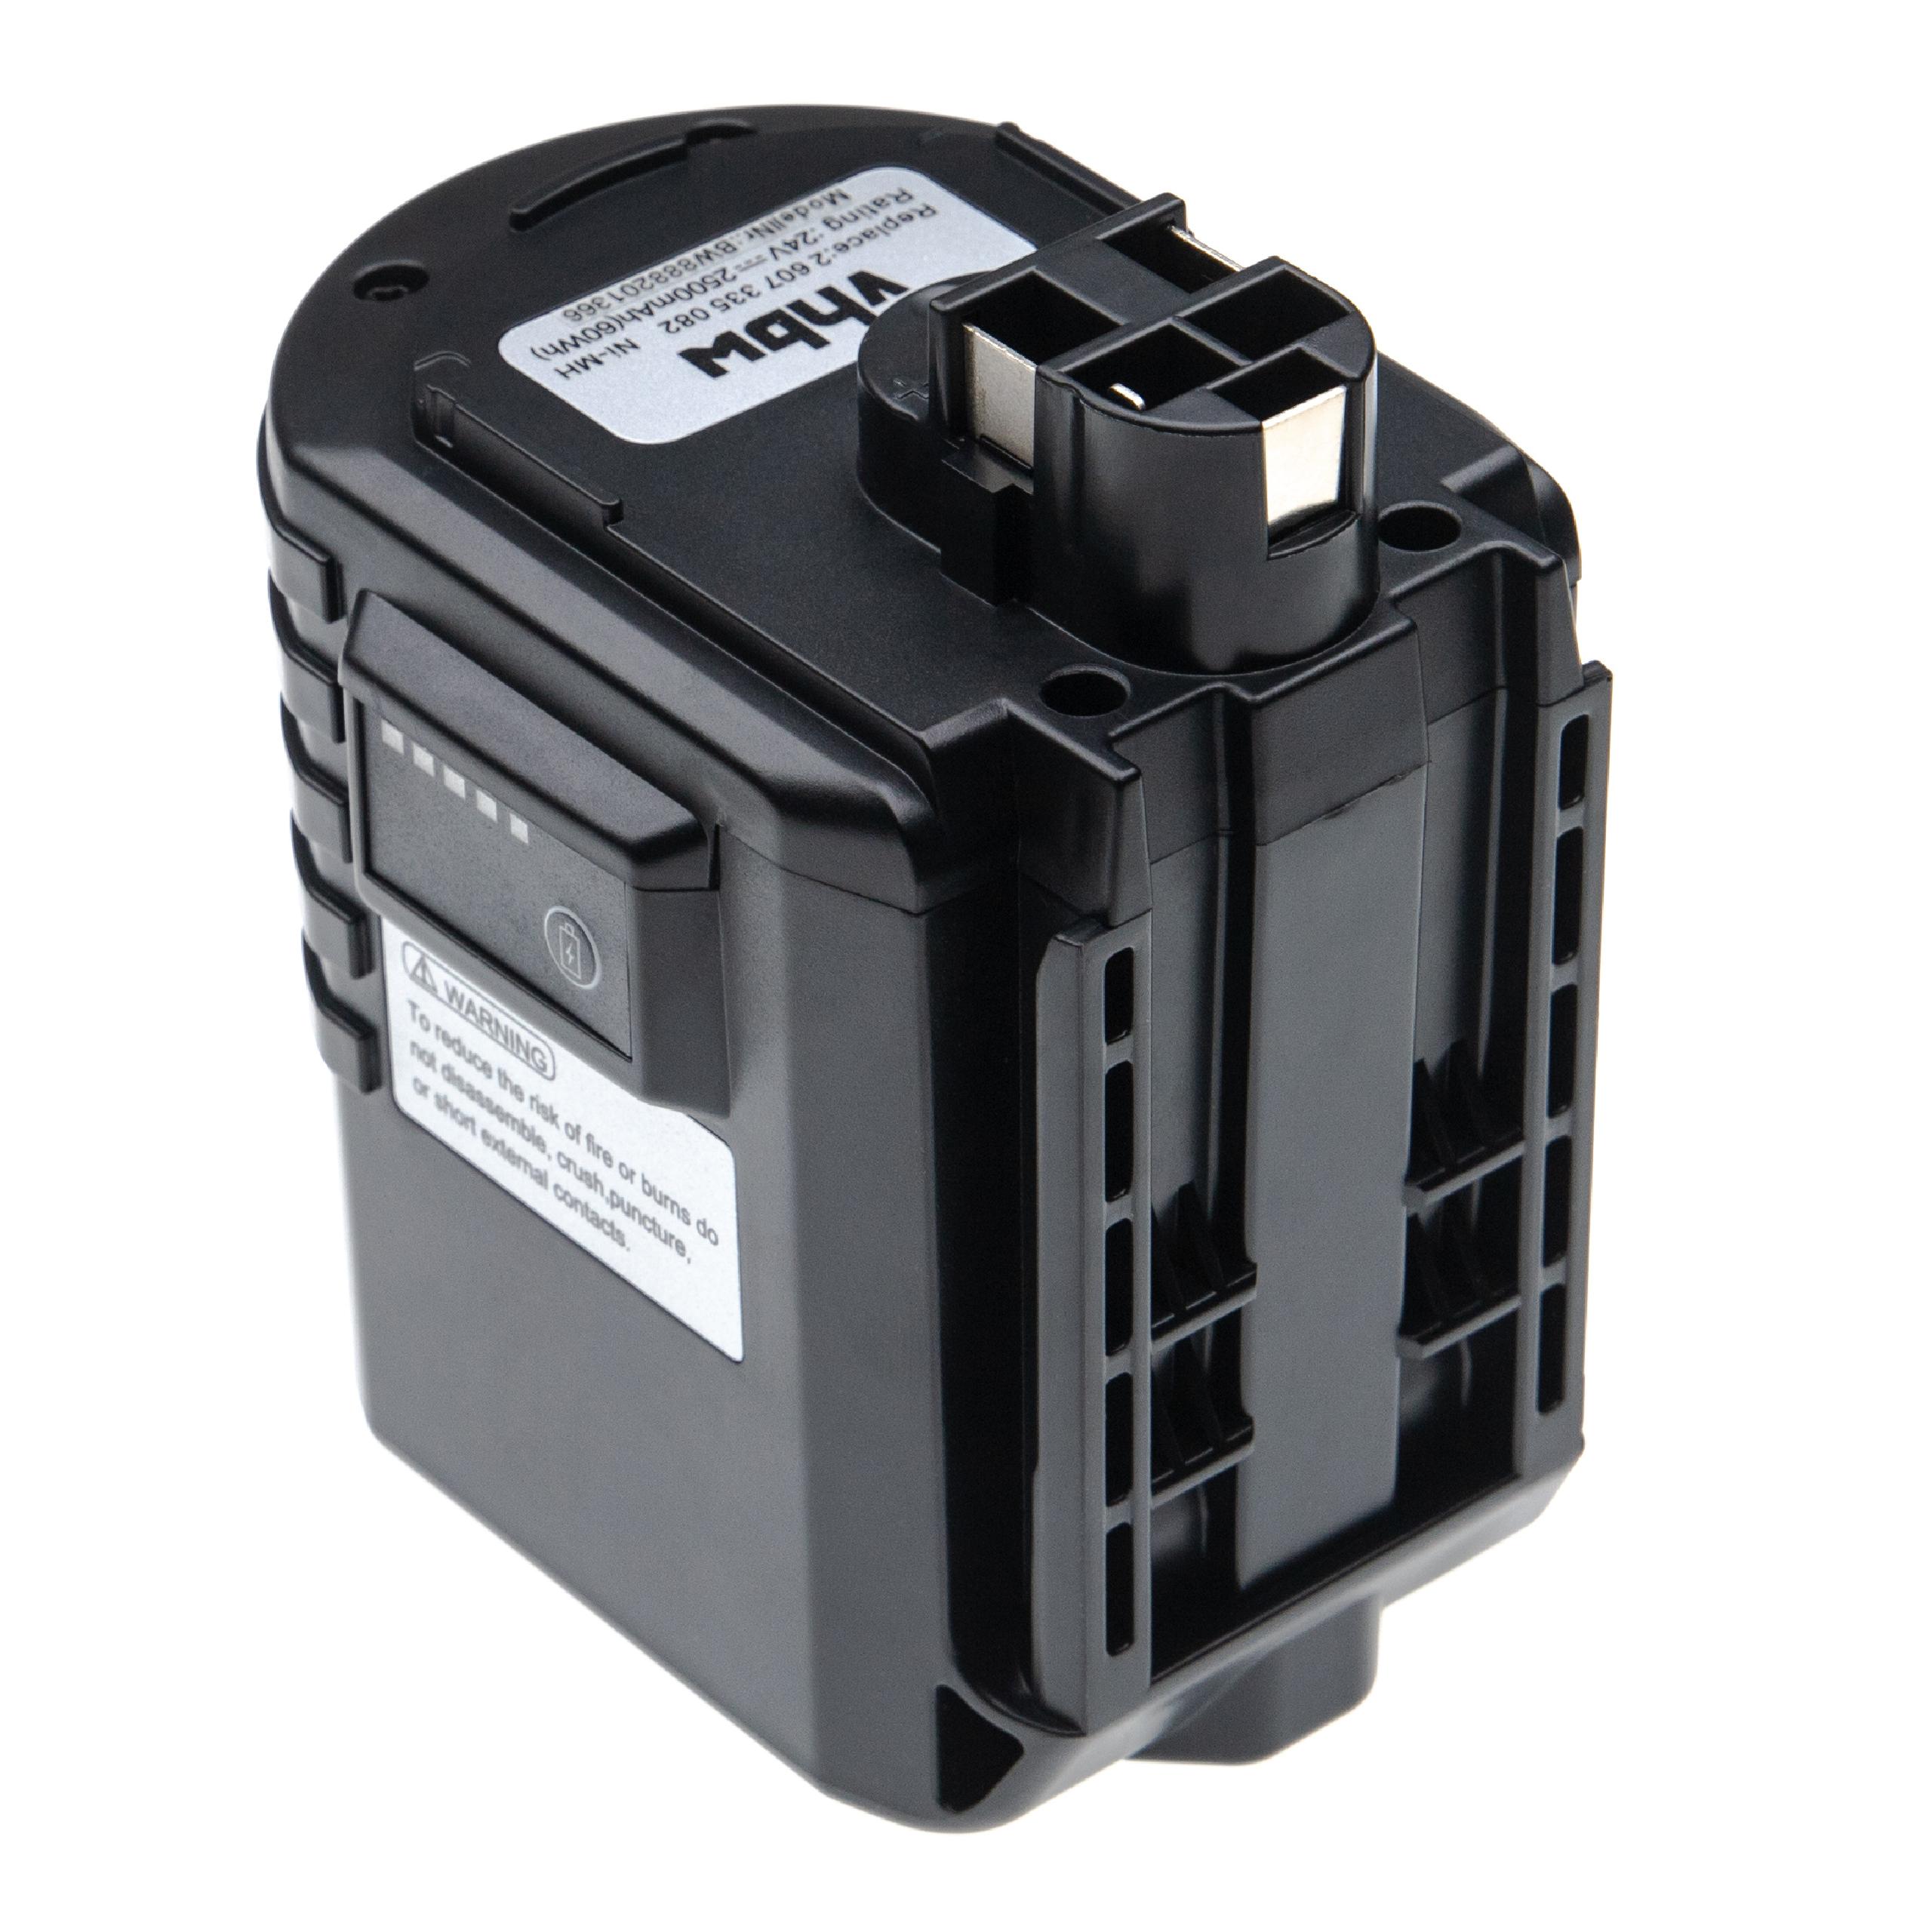 Batterie remplace Bosch 2 607 335 082, 1617334082, 2607335082 pour outil électrique - 2500 mAh, 24 V, NiMH